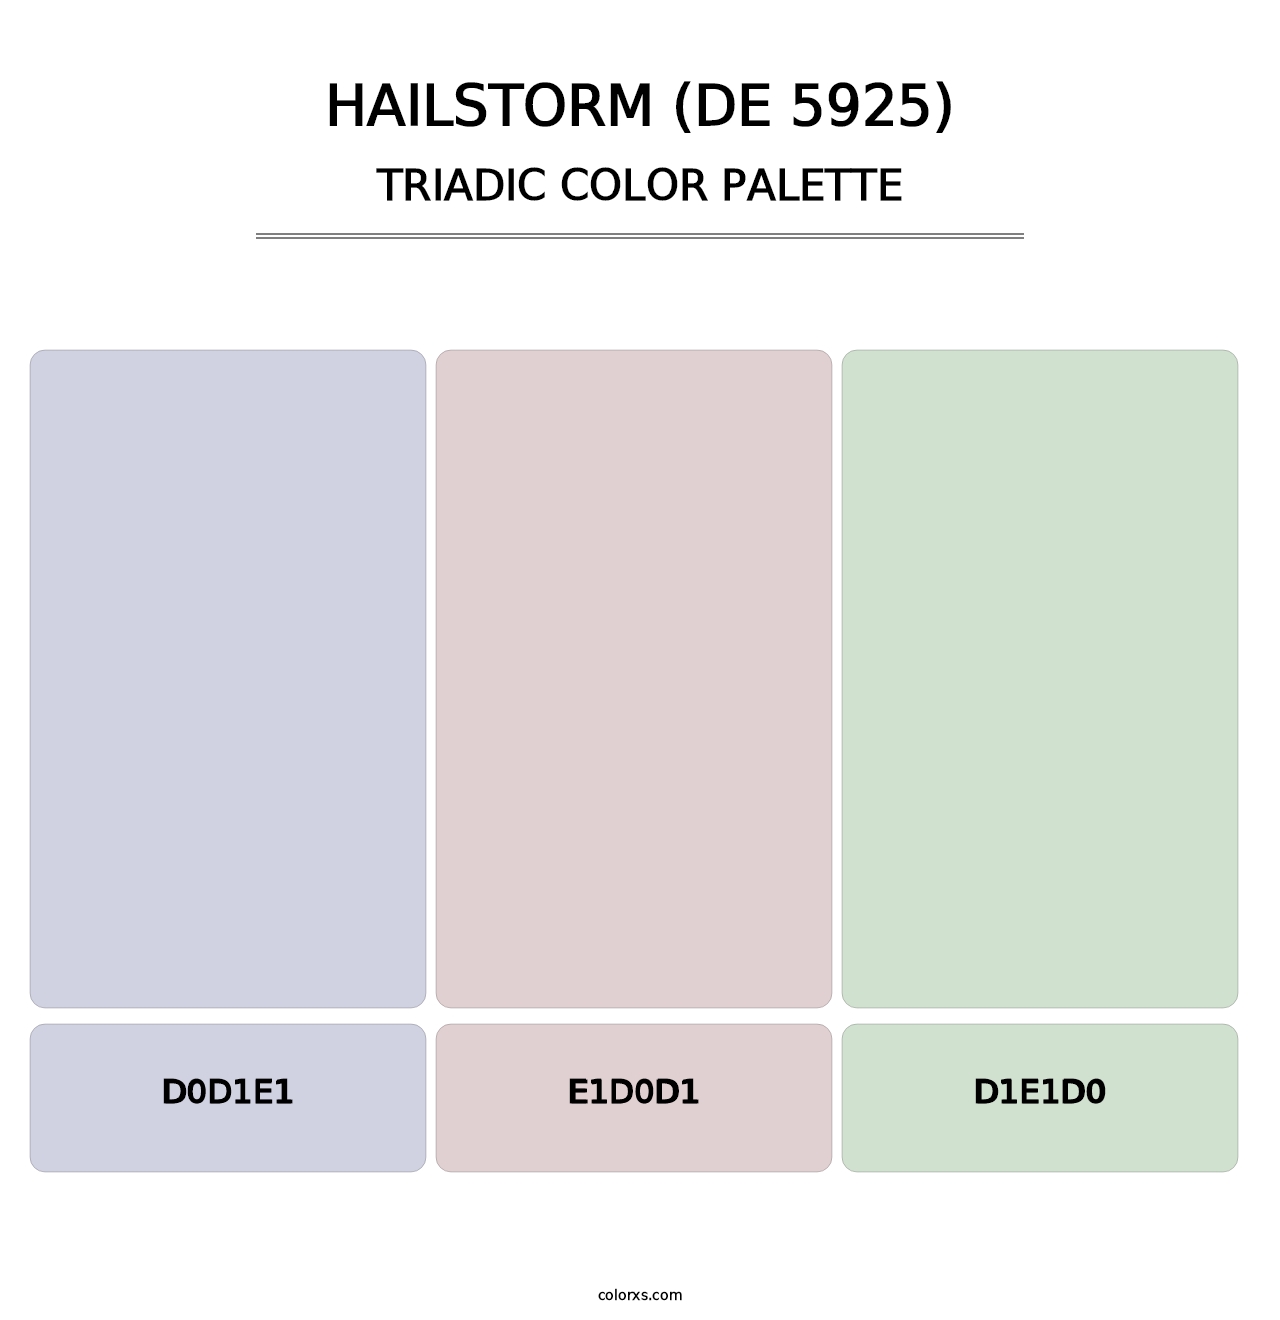 Hailstorm (DE 5925) - Triadic Color Palette